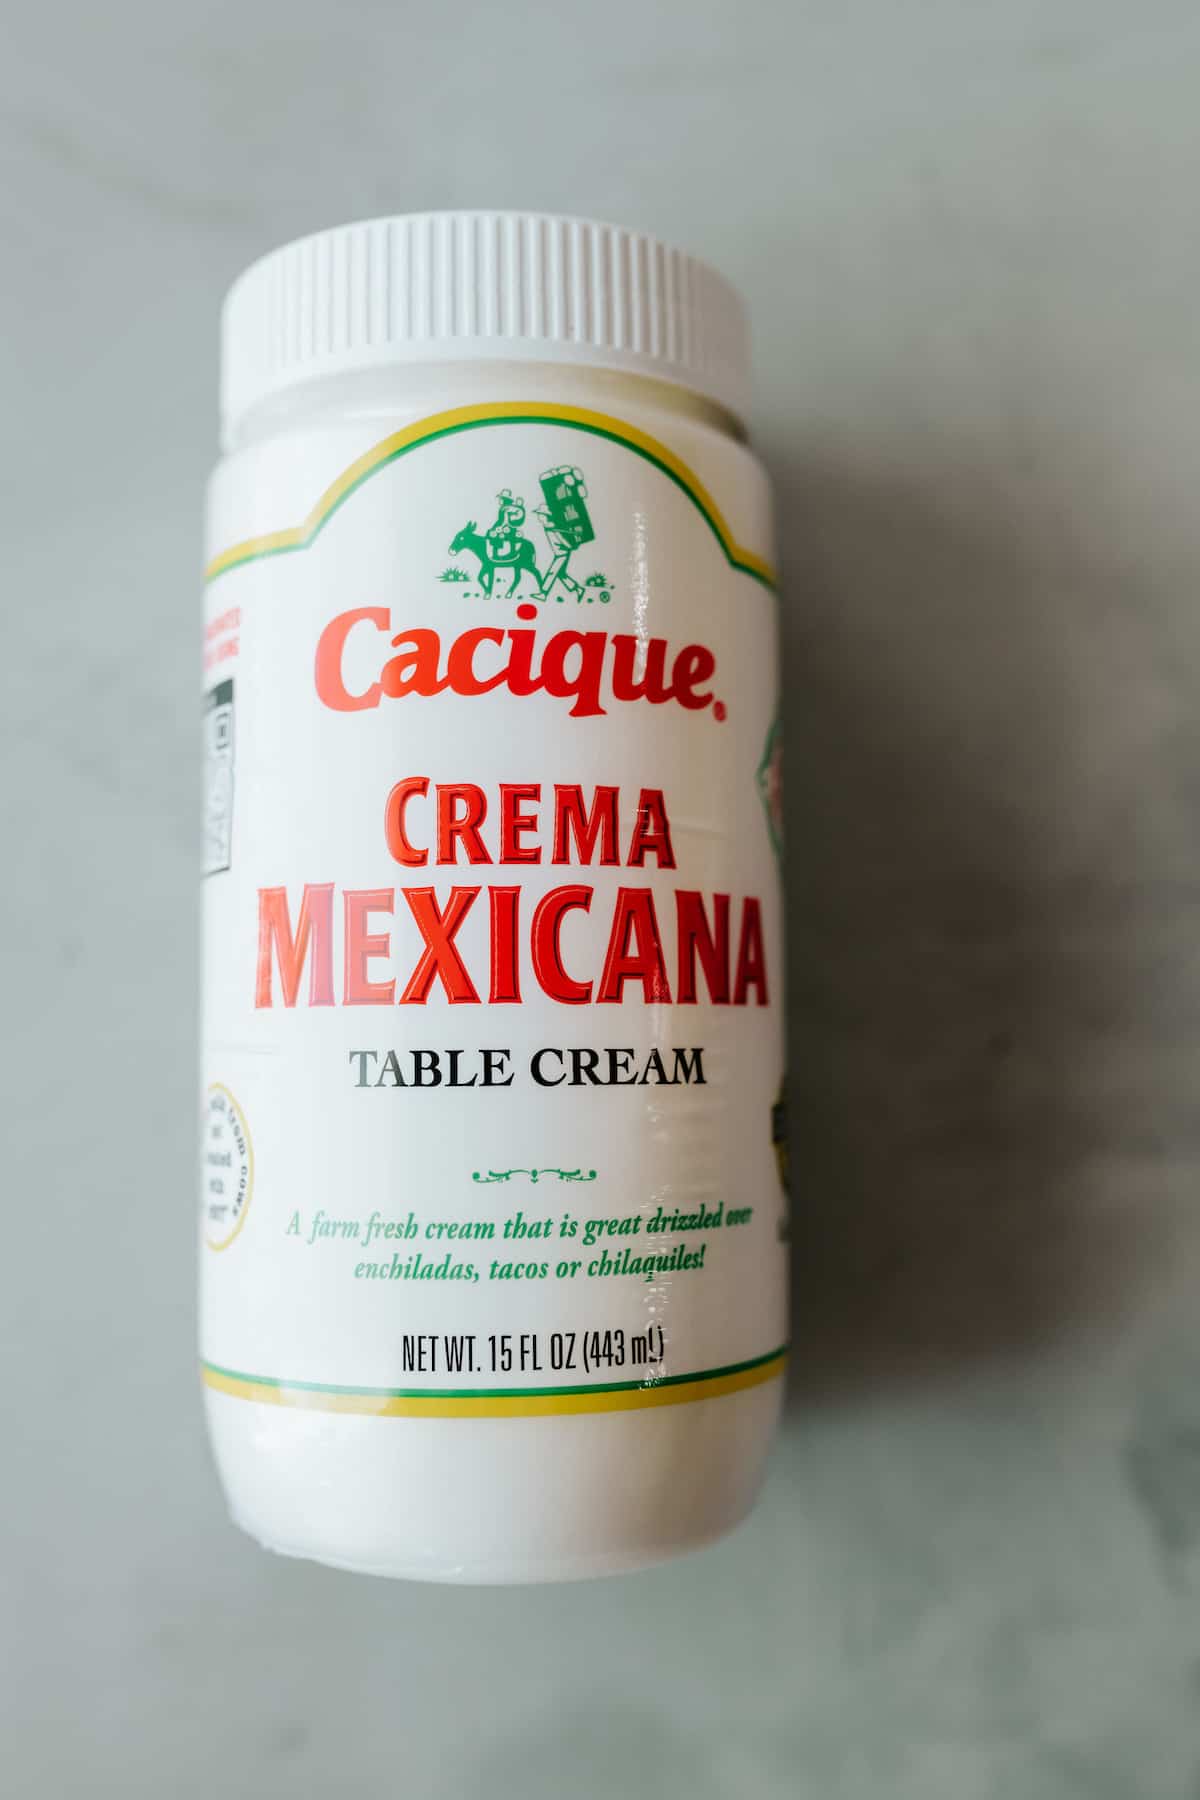 botella de marca cacique crema mexicana sobre una mesa gris.